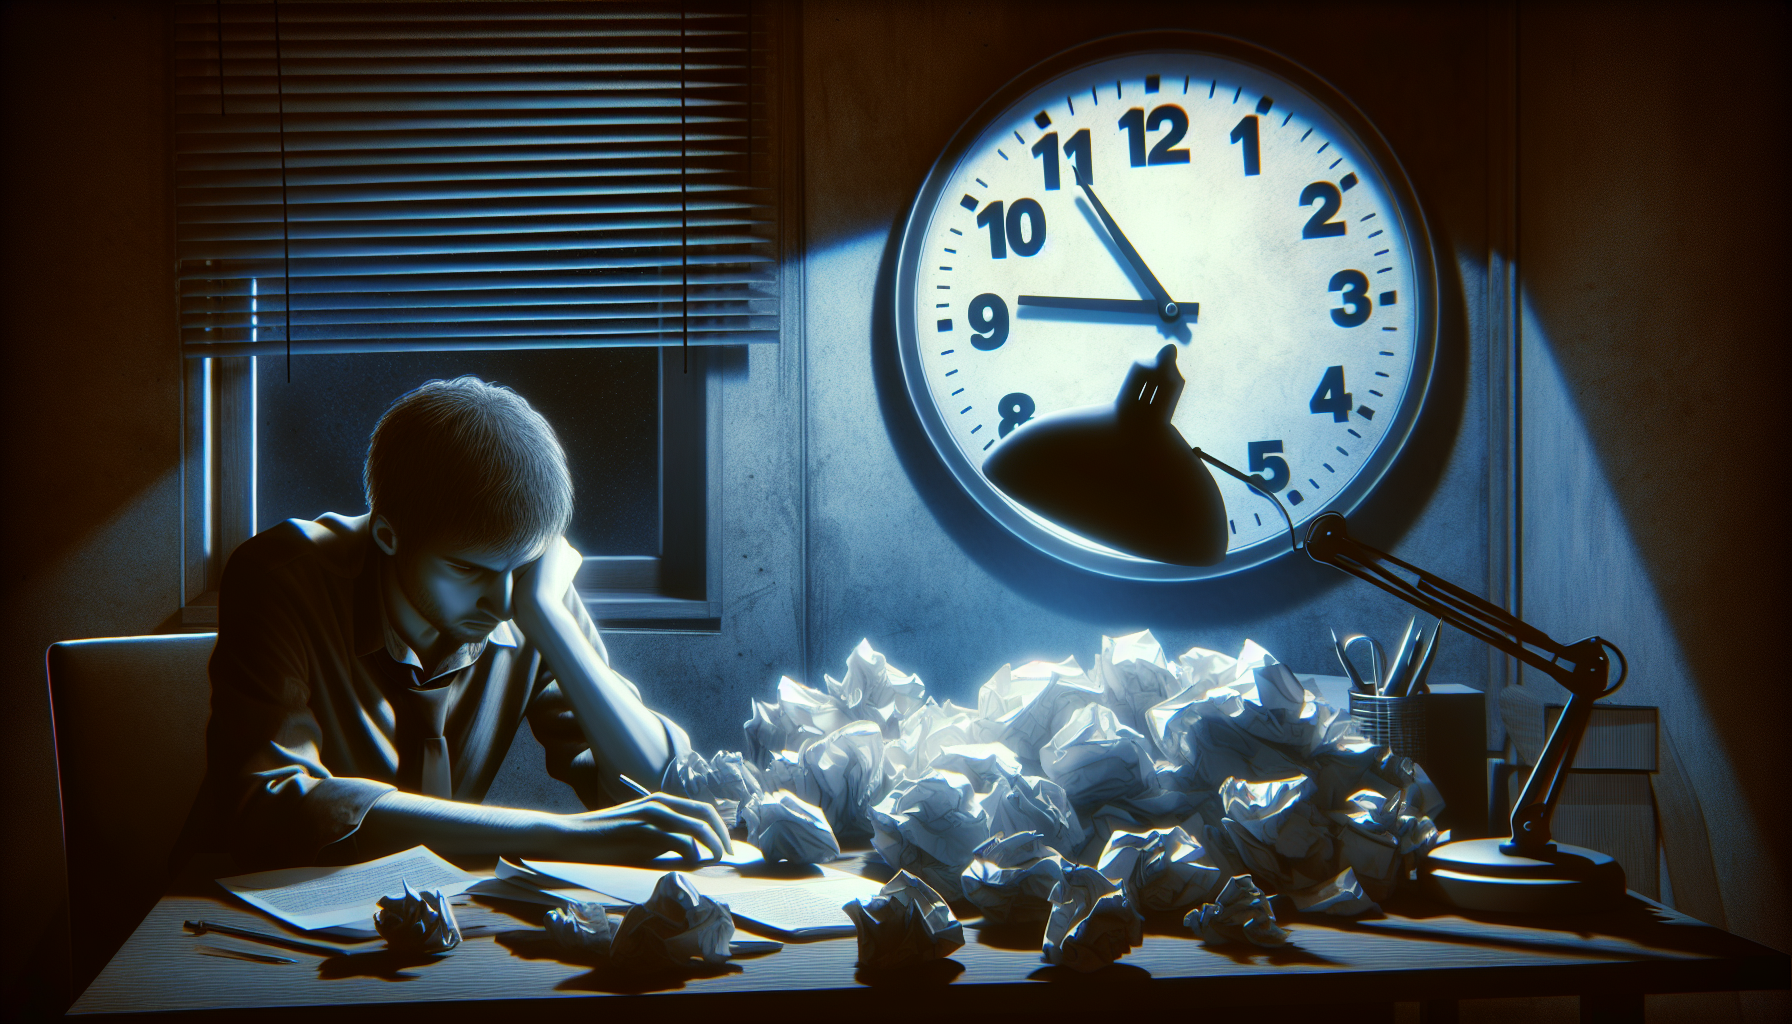 Illustration d'une personne regardant l'horloge et repoussant une pile de travail, symbolisant la procrastination